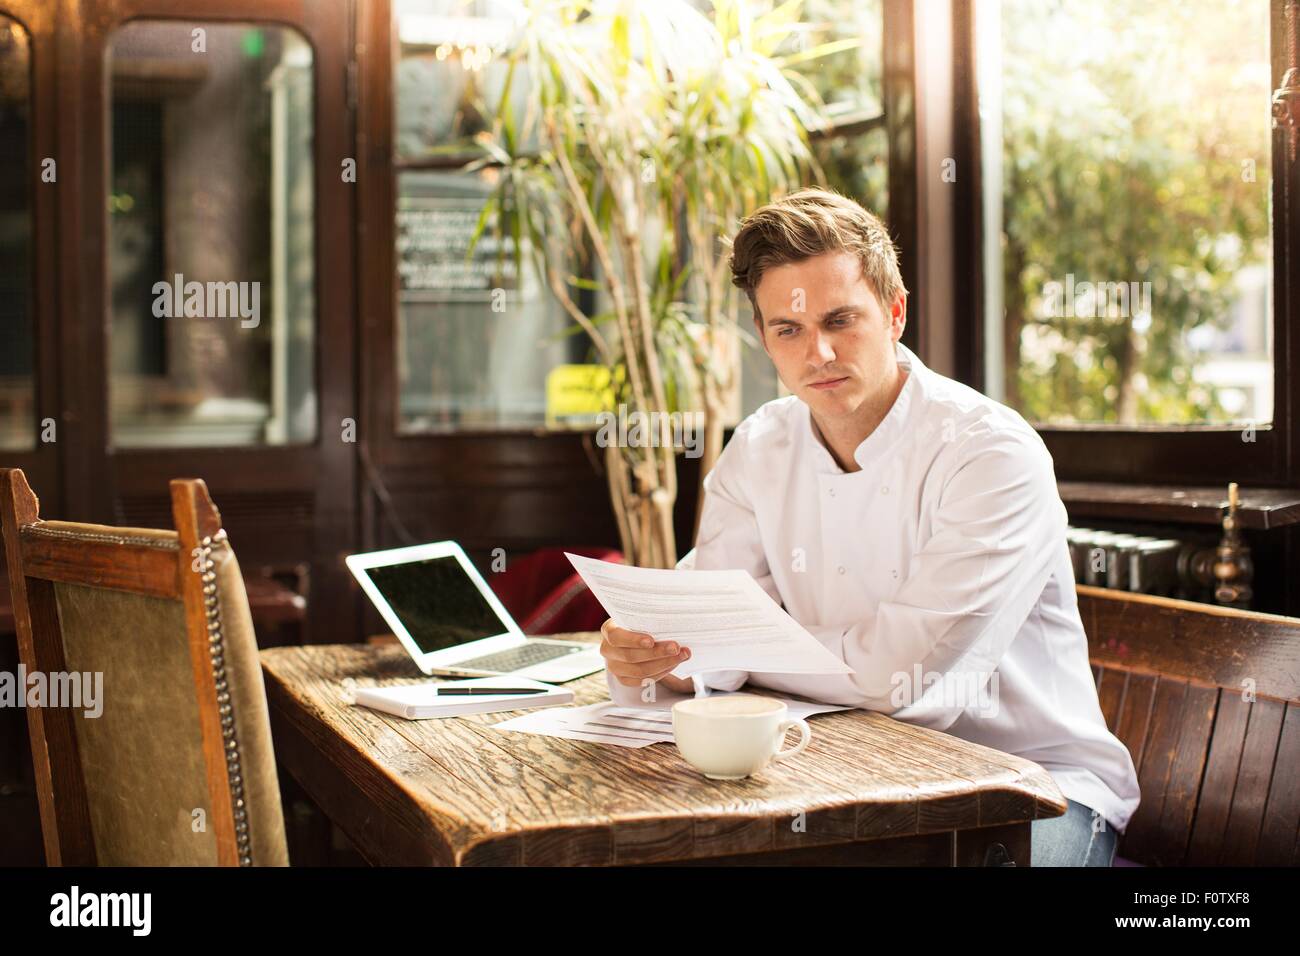 El joven chef sentado en trabajo buscando papeleo Foto de stock